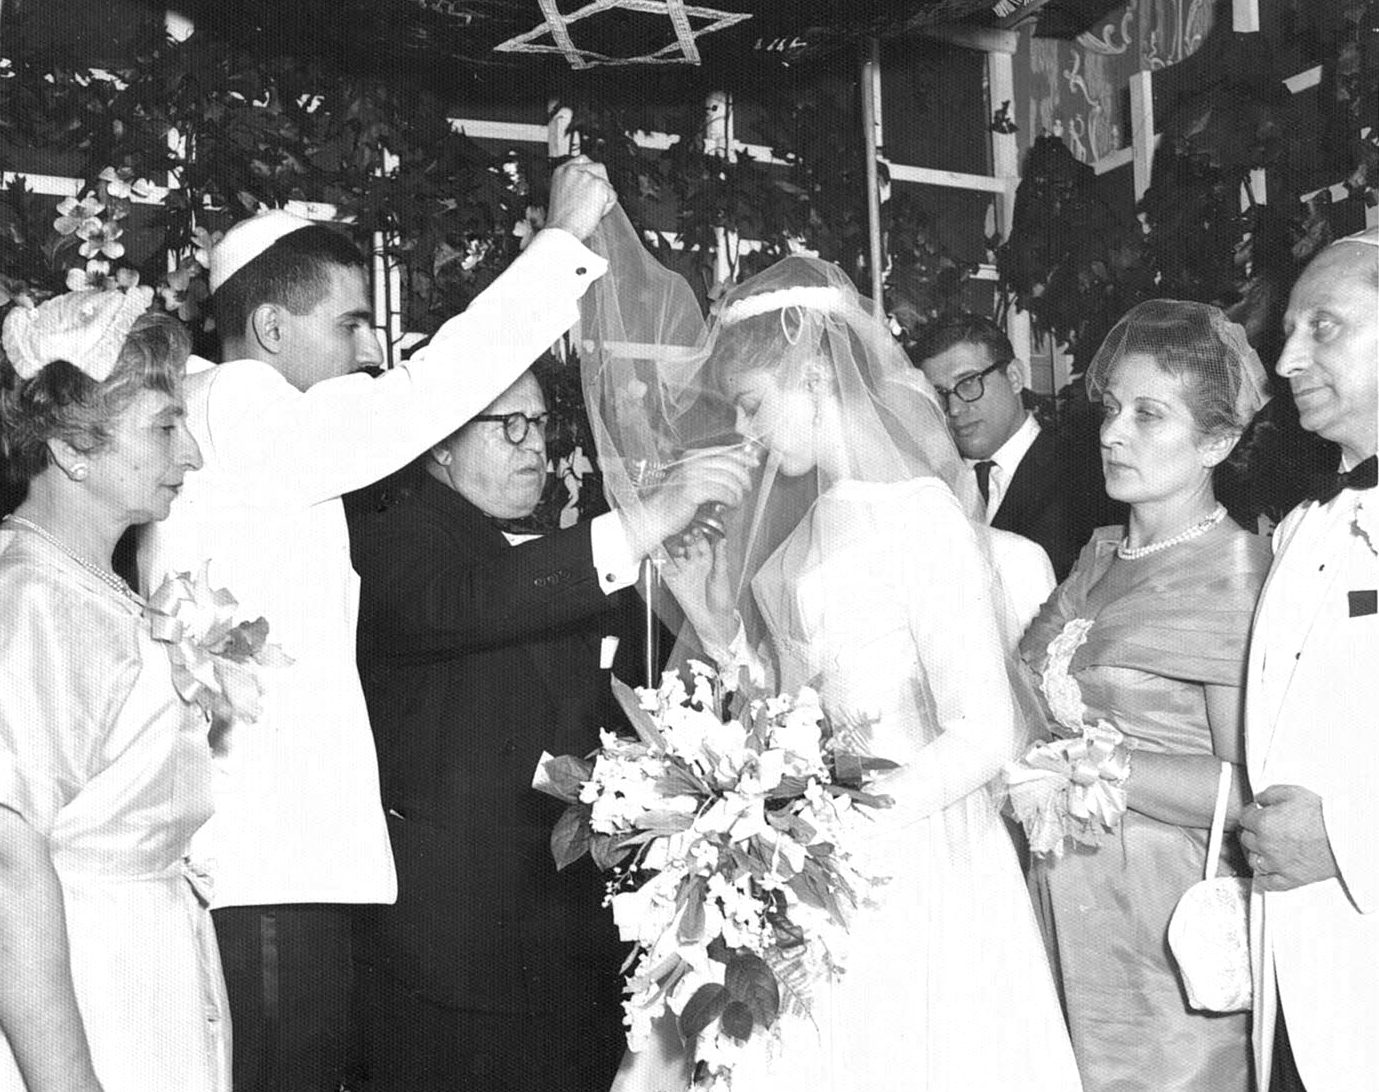 Tova and Maier’s wedding, Brooklyn, NY 1960